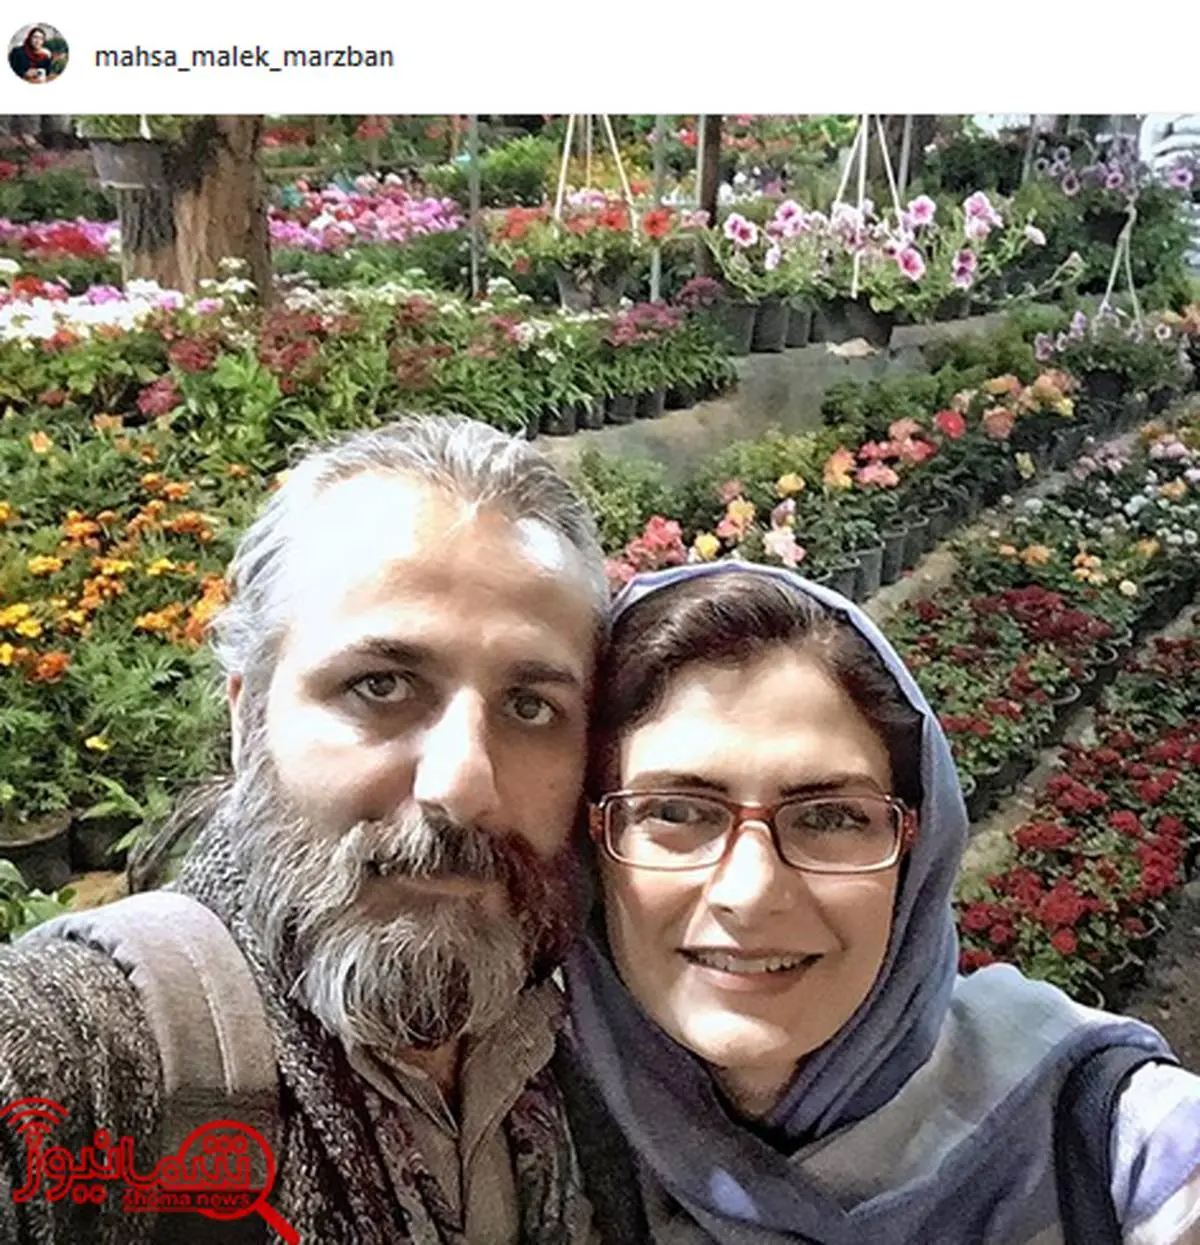 تصویری که خانم مجری از همسر دومش منتشر کرد + عکس